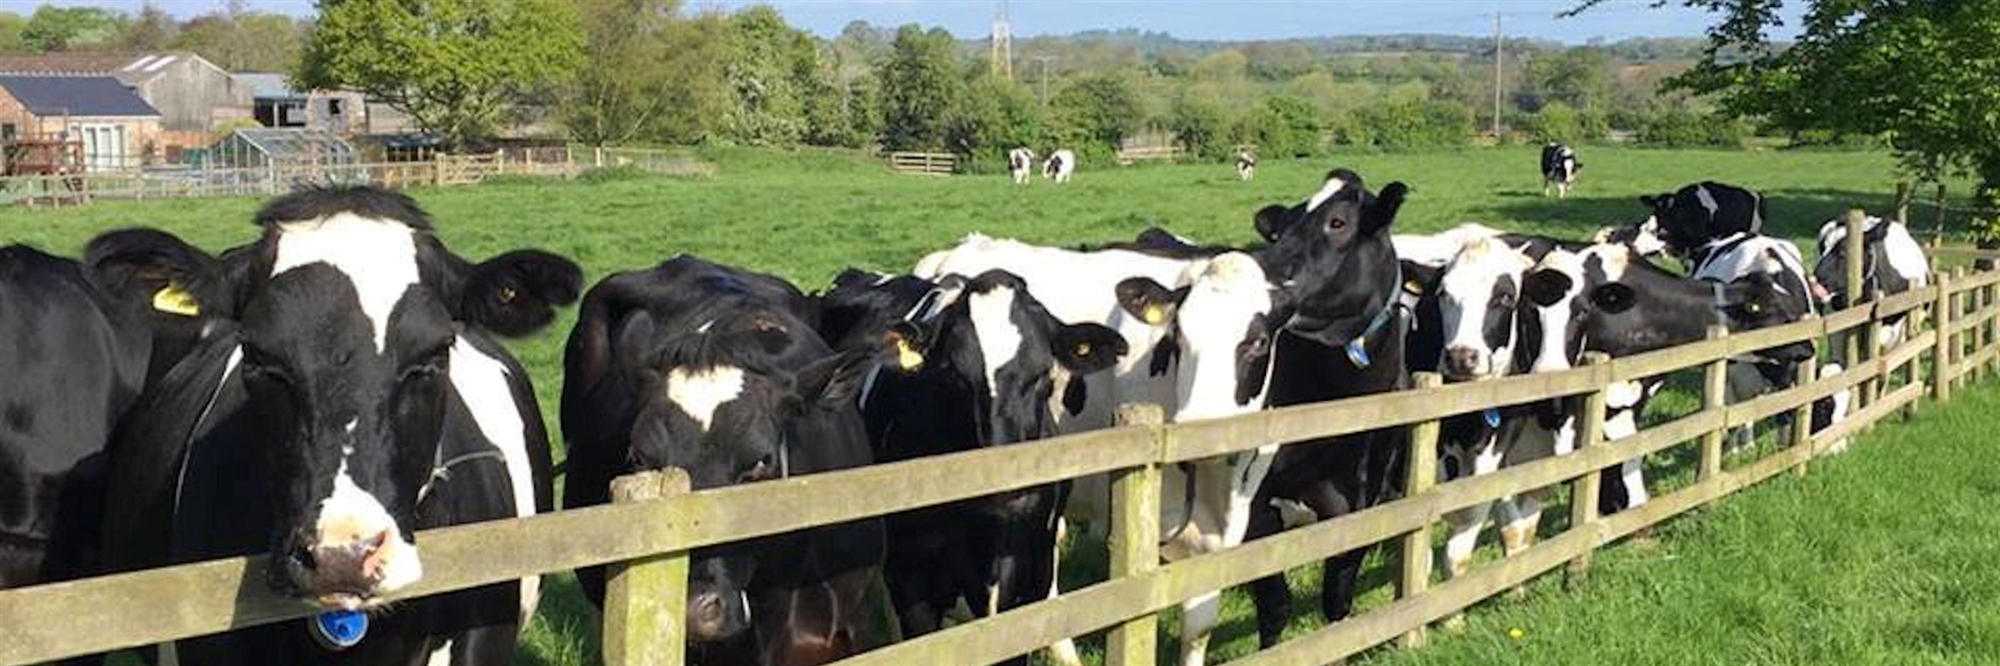 Herd of cows in summer